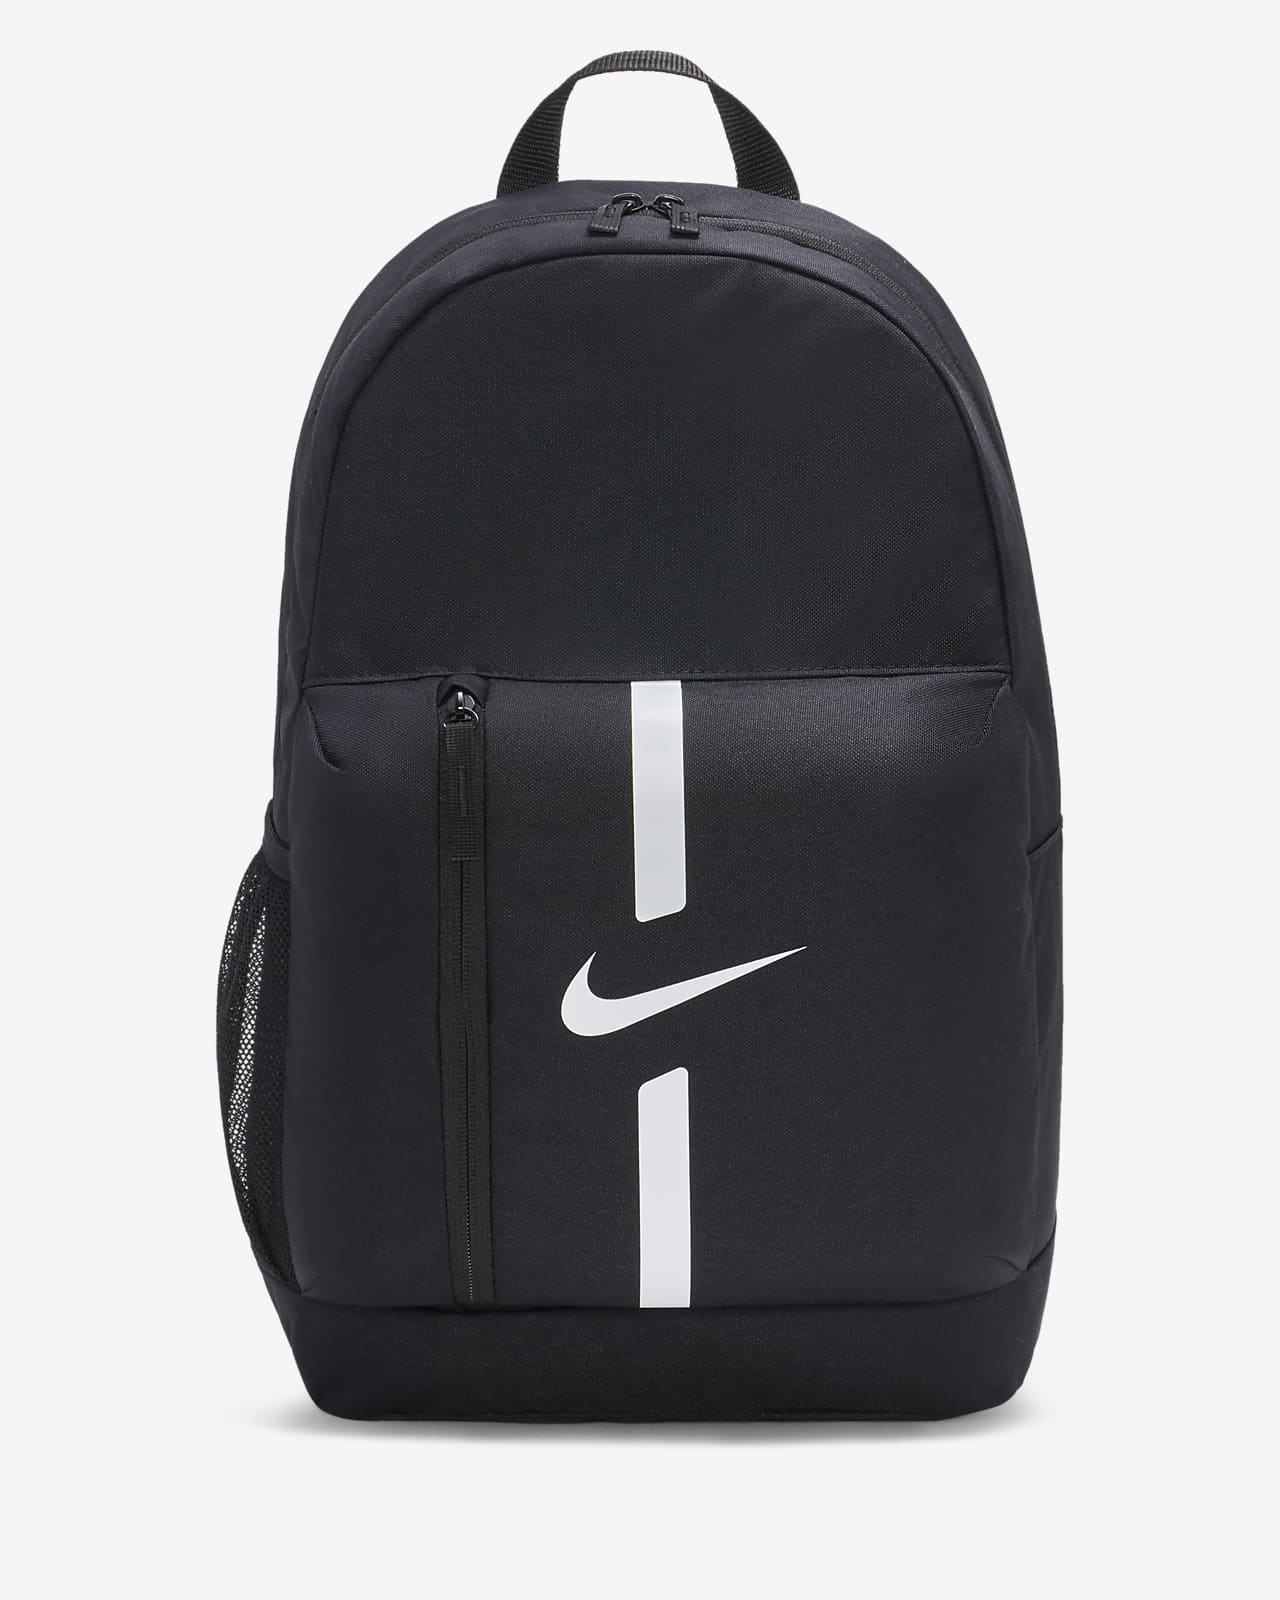 Fotbollsryggsäck Nike Academy Team för barn (22 L)